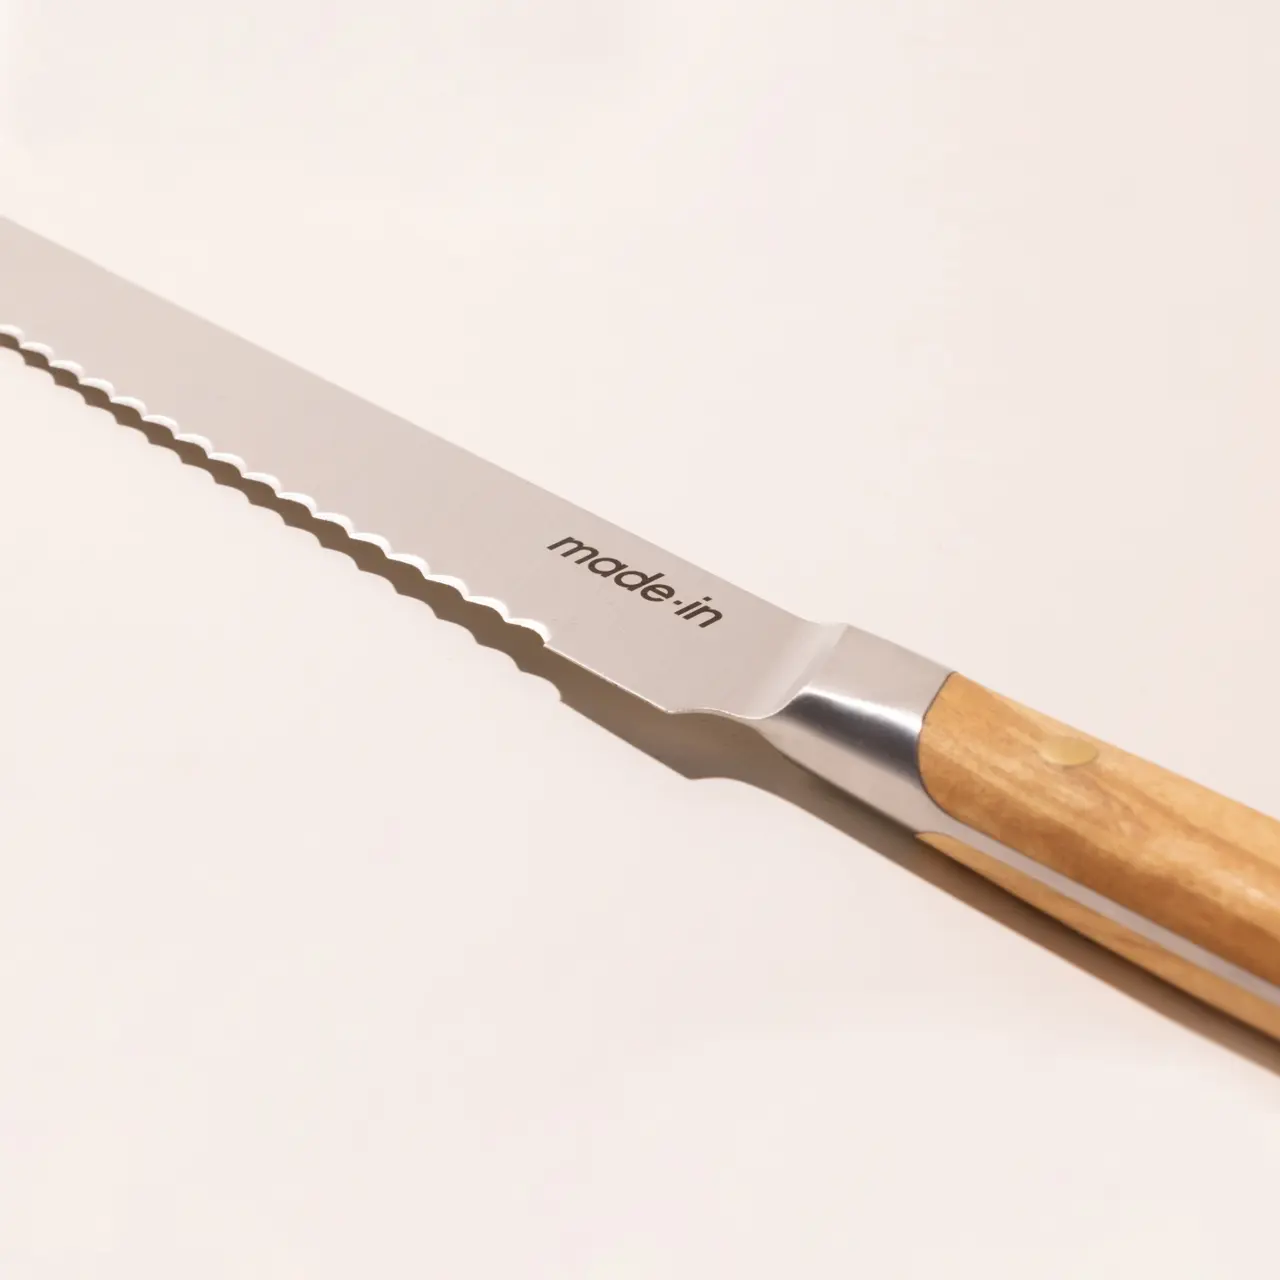 olive wood bread knife detail image